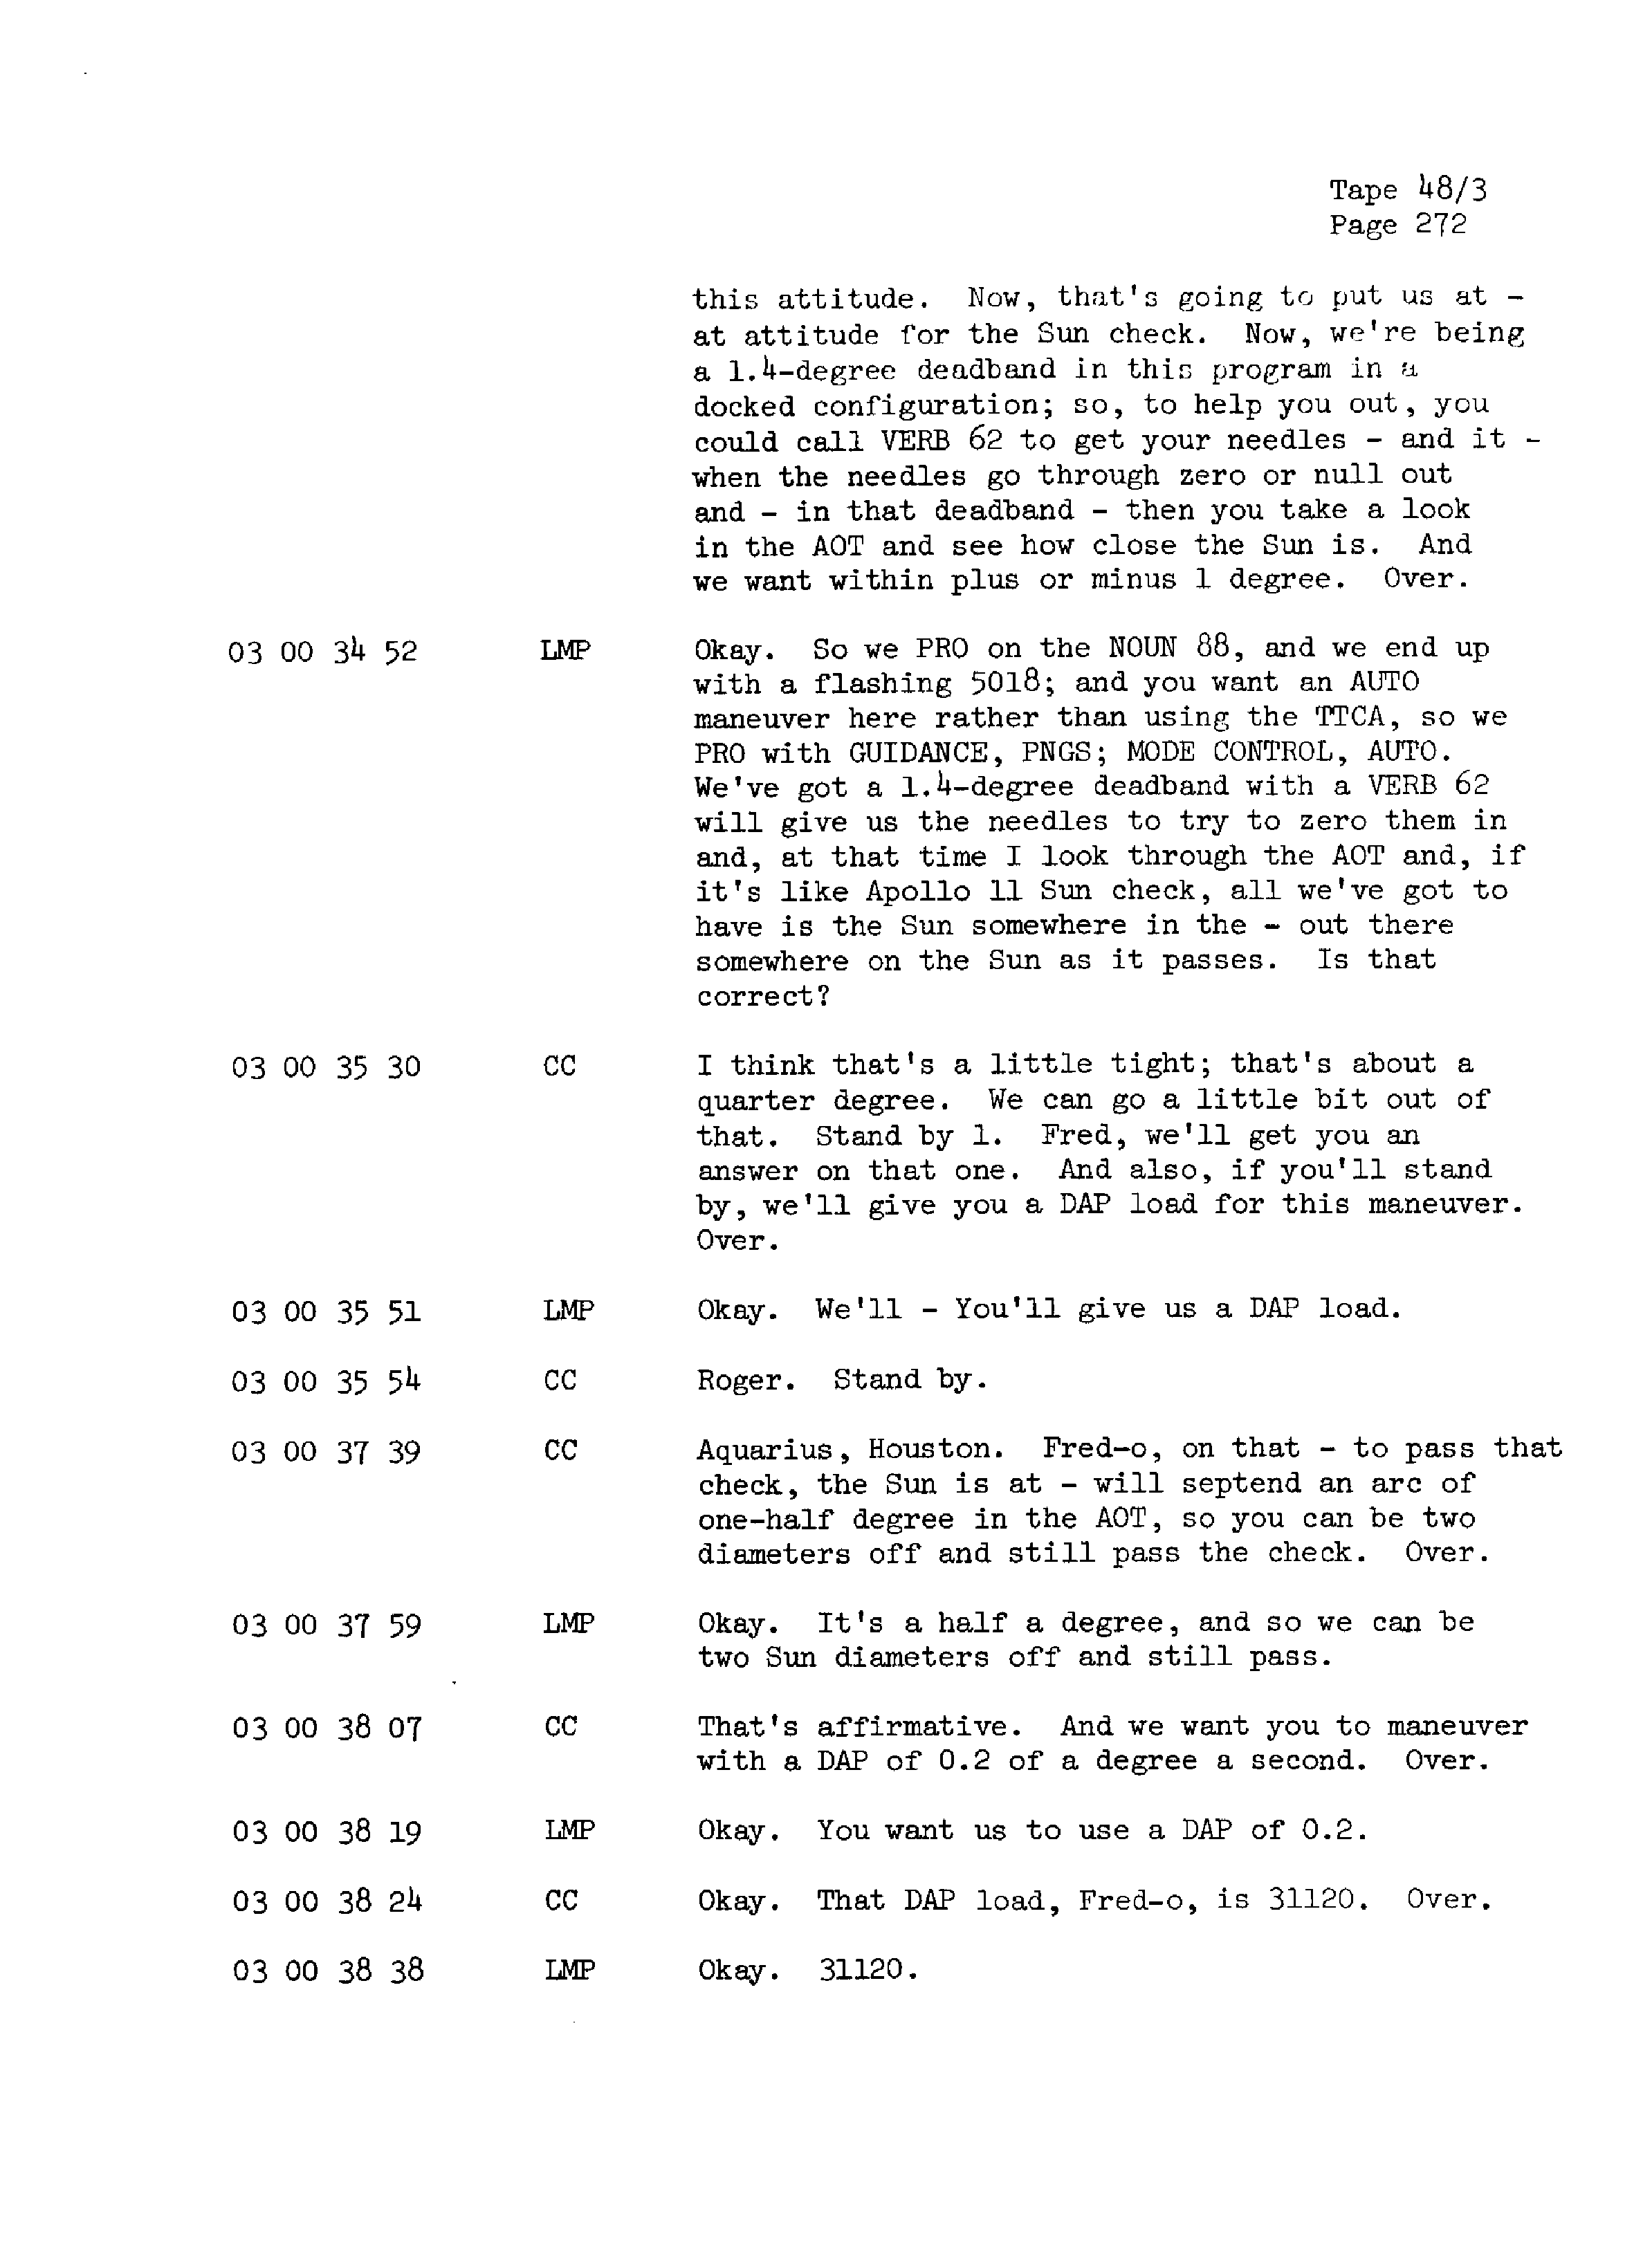 Page 279 of Apollo 13’s original transcript